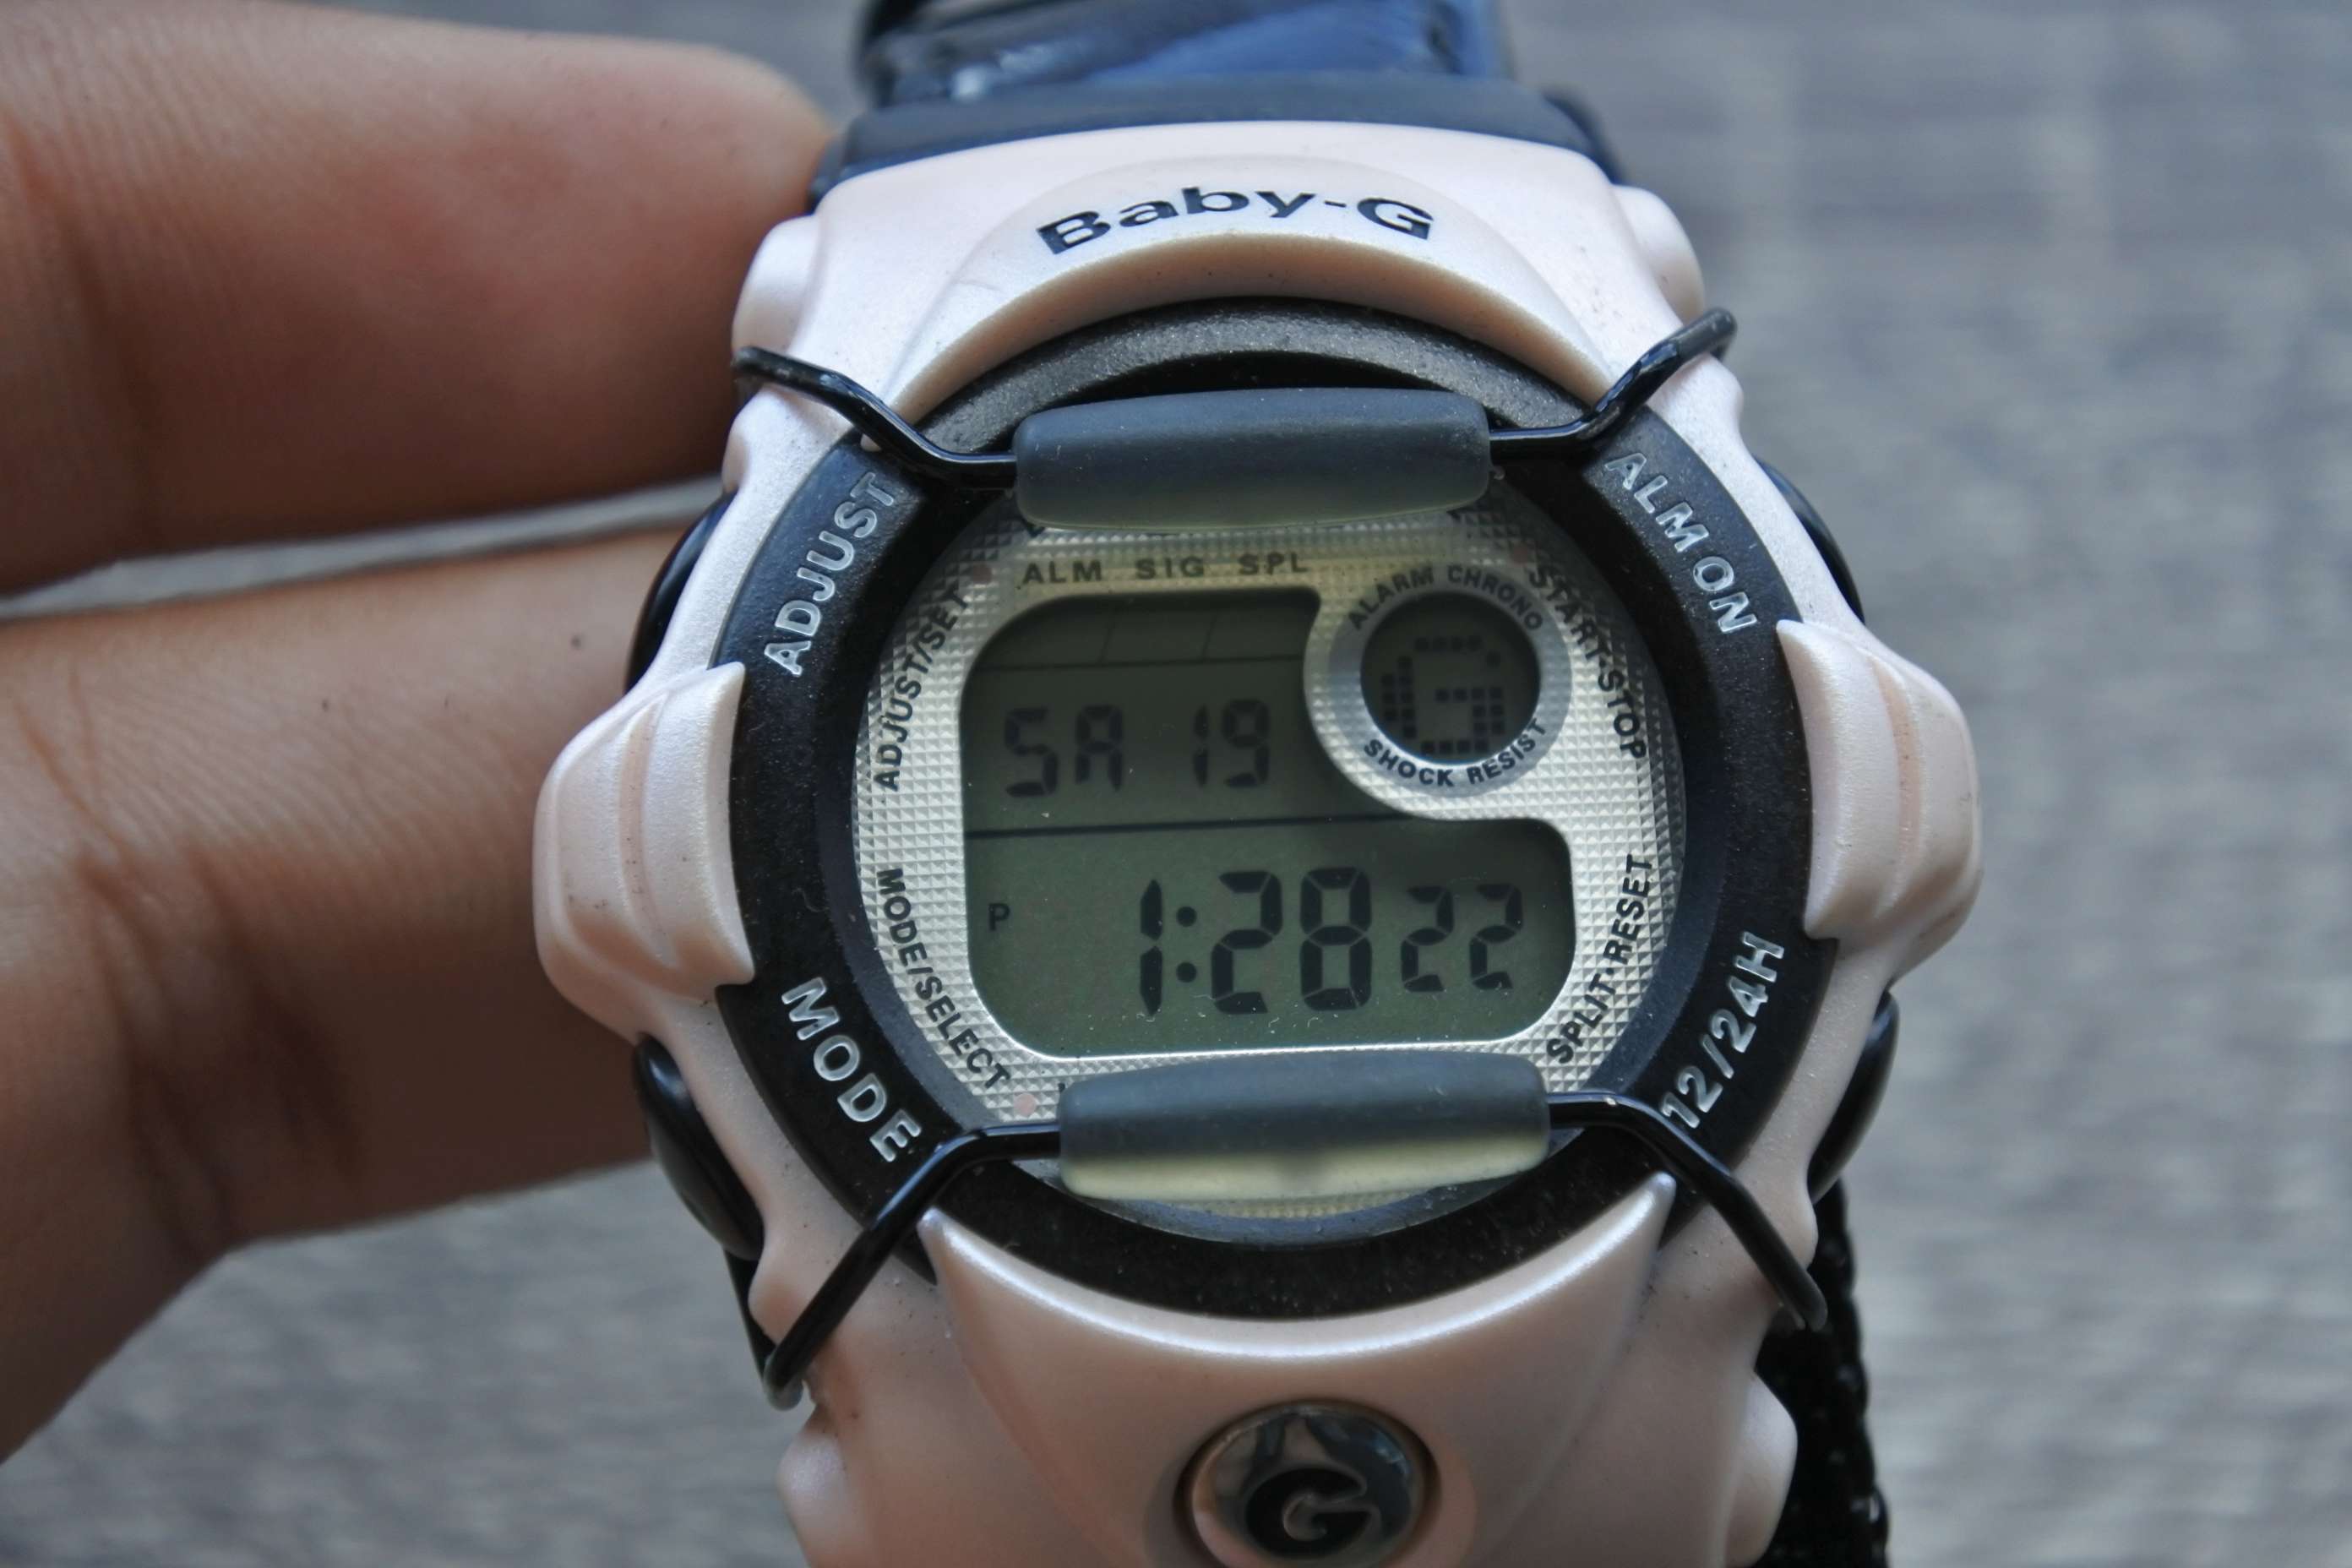 นาฬิกา ผู้หญิง Baby G CasioVintage ผู้ชาย สายสแตนเลส แท้มือสองญี่ปุ่น ระบบ Quartz หน้าปัด 41mm